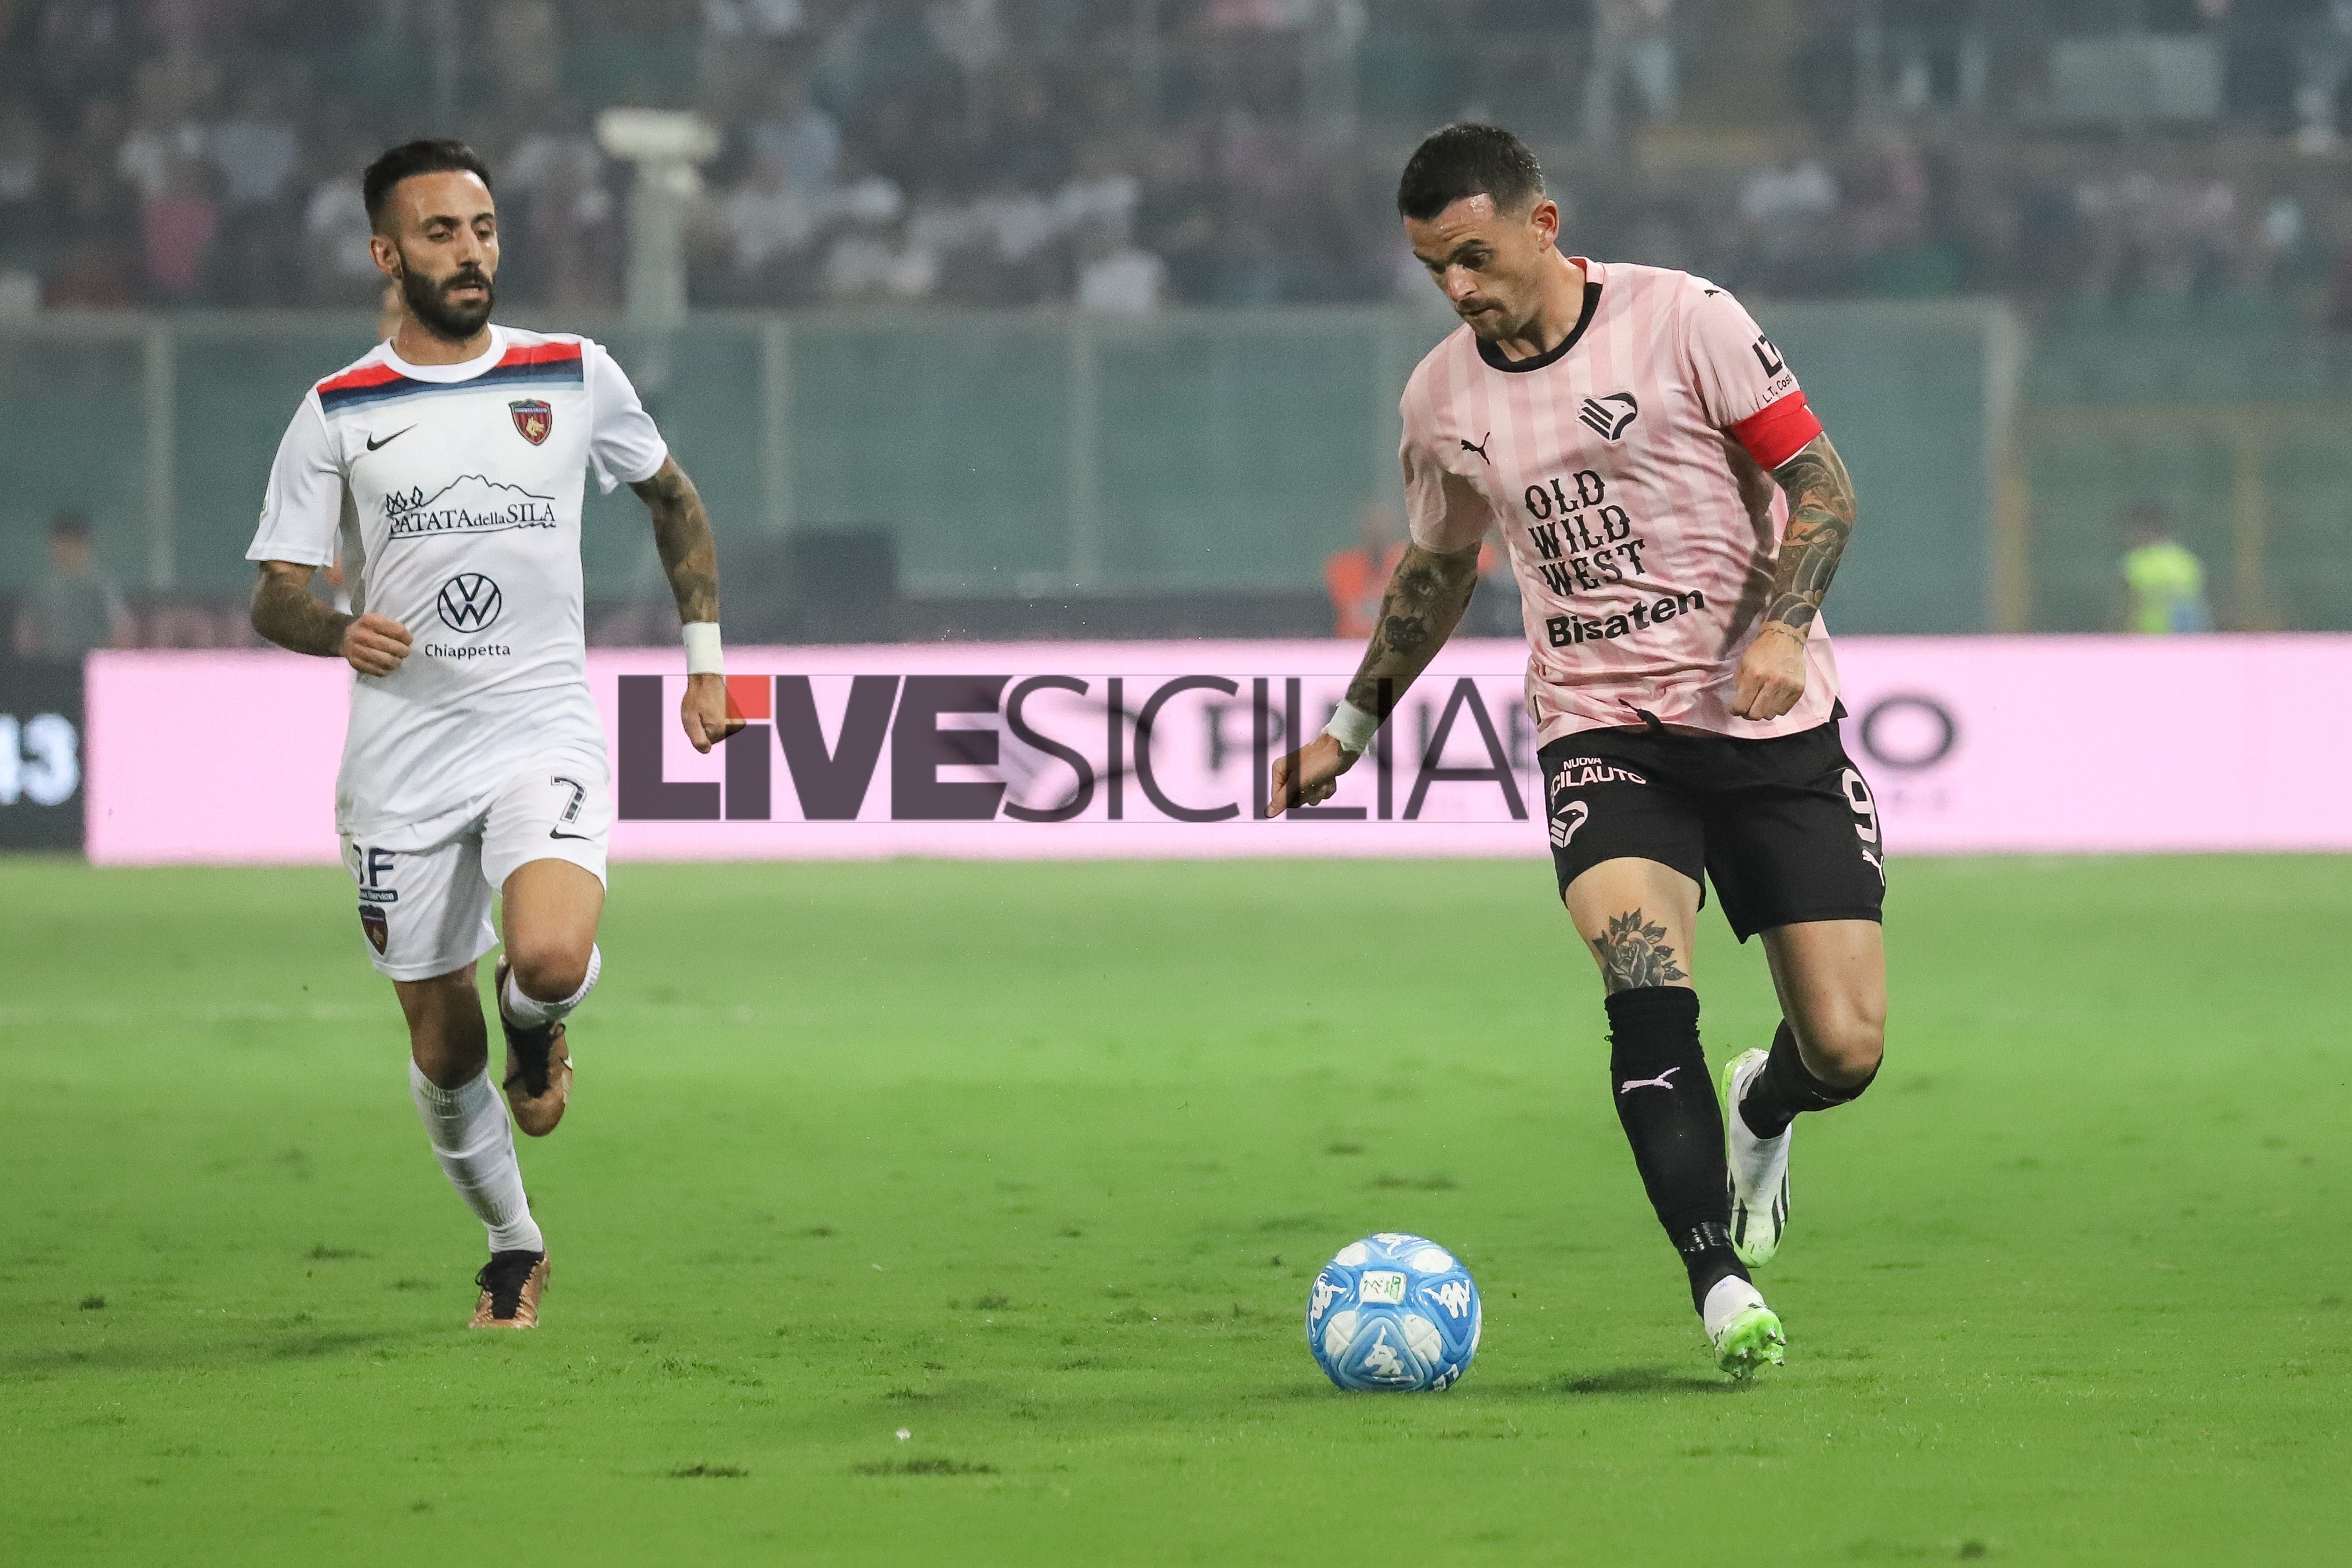 Palermo-Catanzaro 0-2: triplo cambio per i rosanero – LIVE